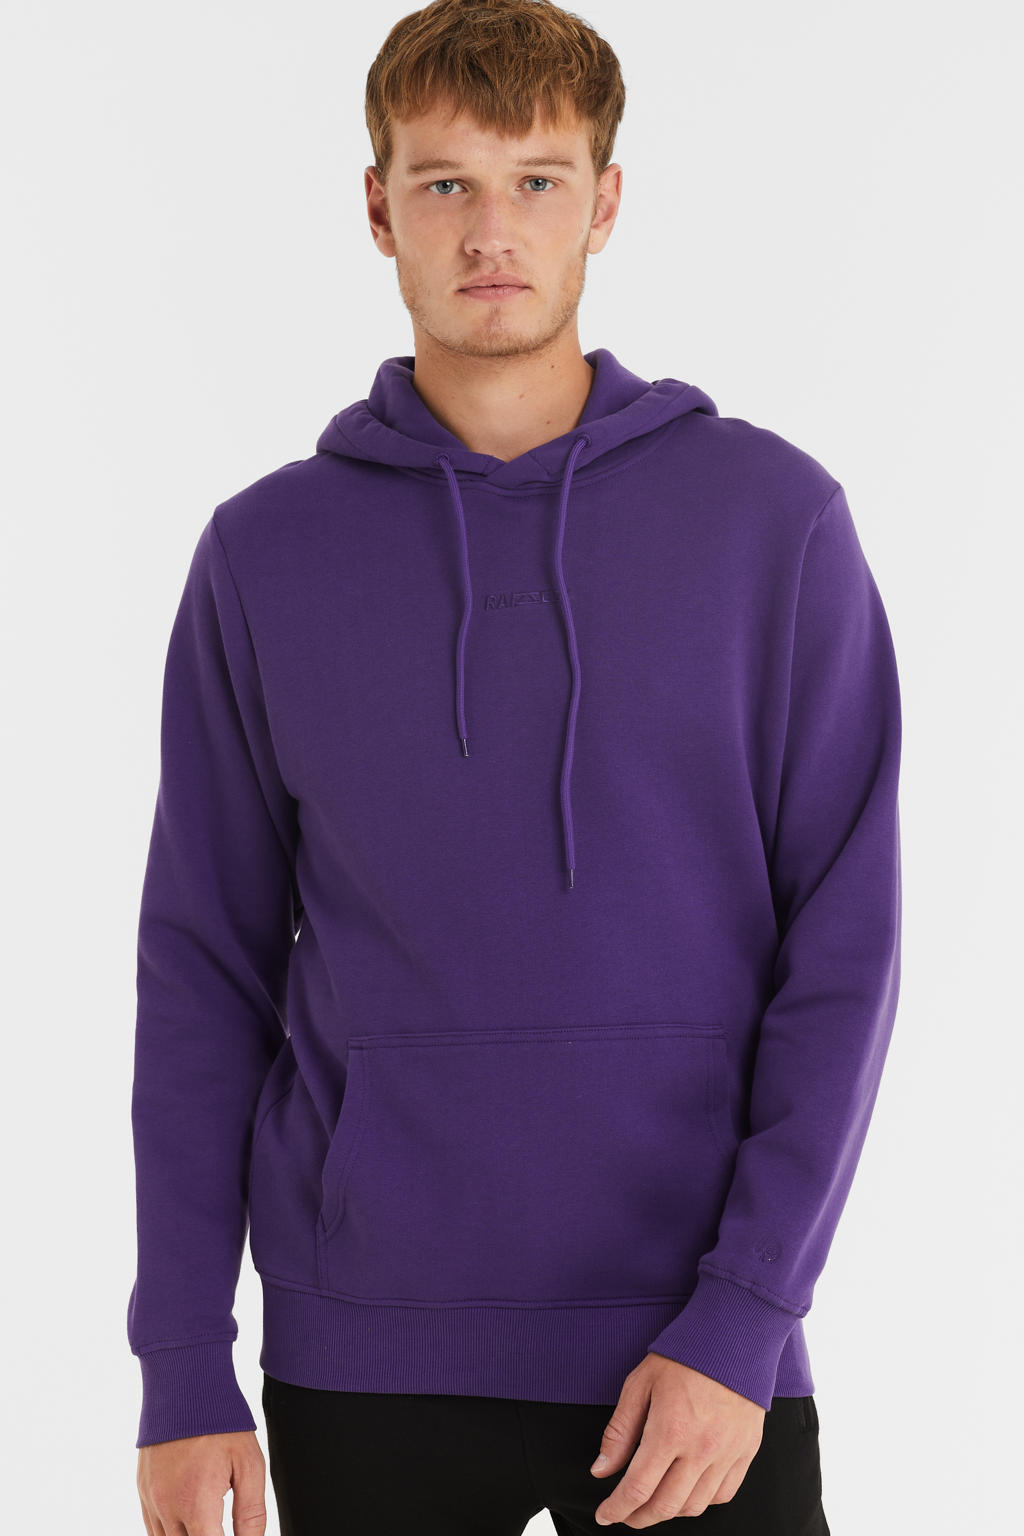 Raizzed hoodie NEWTON purple stone